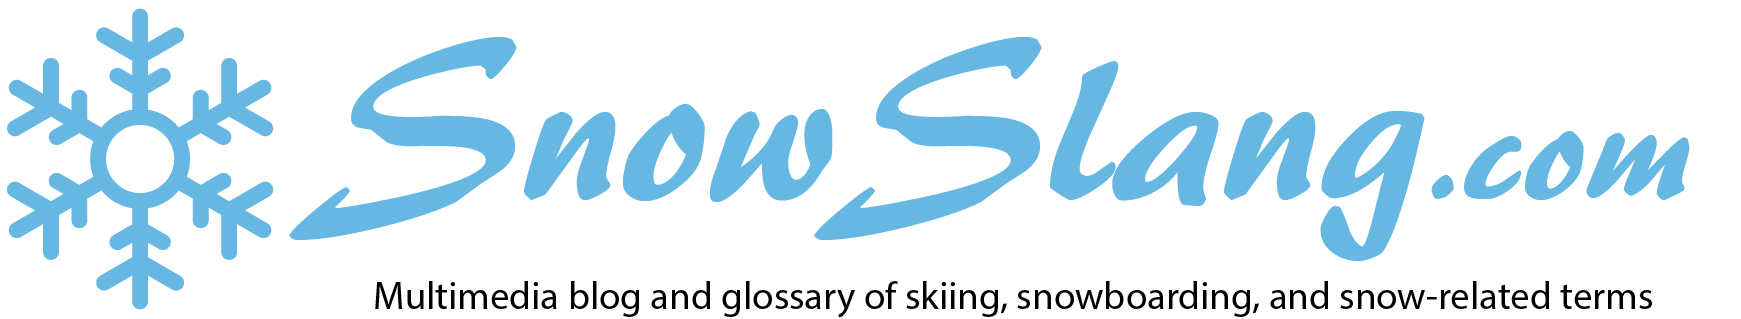 ski terms slang